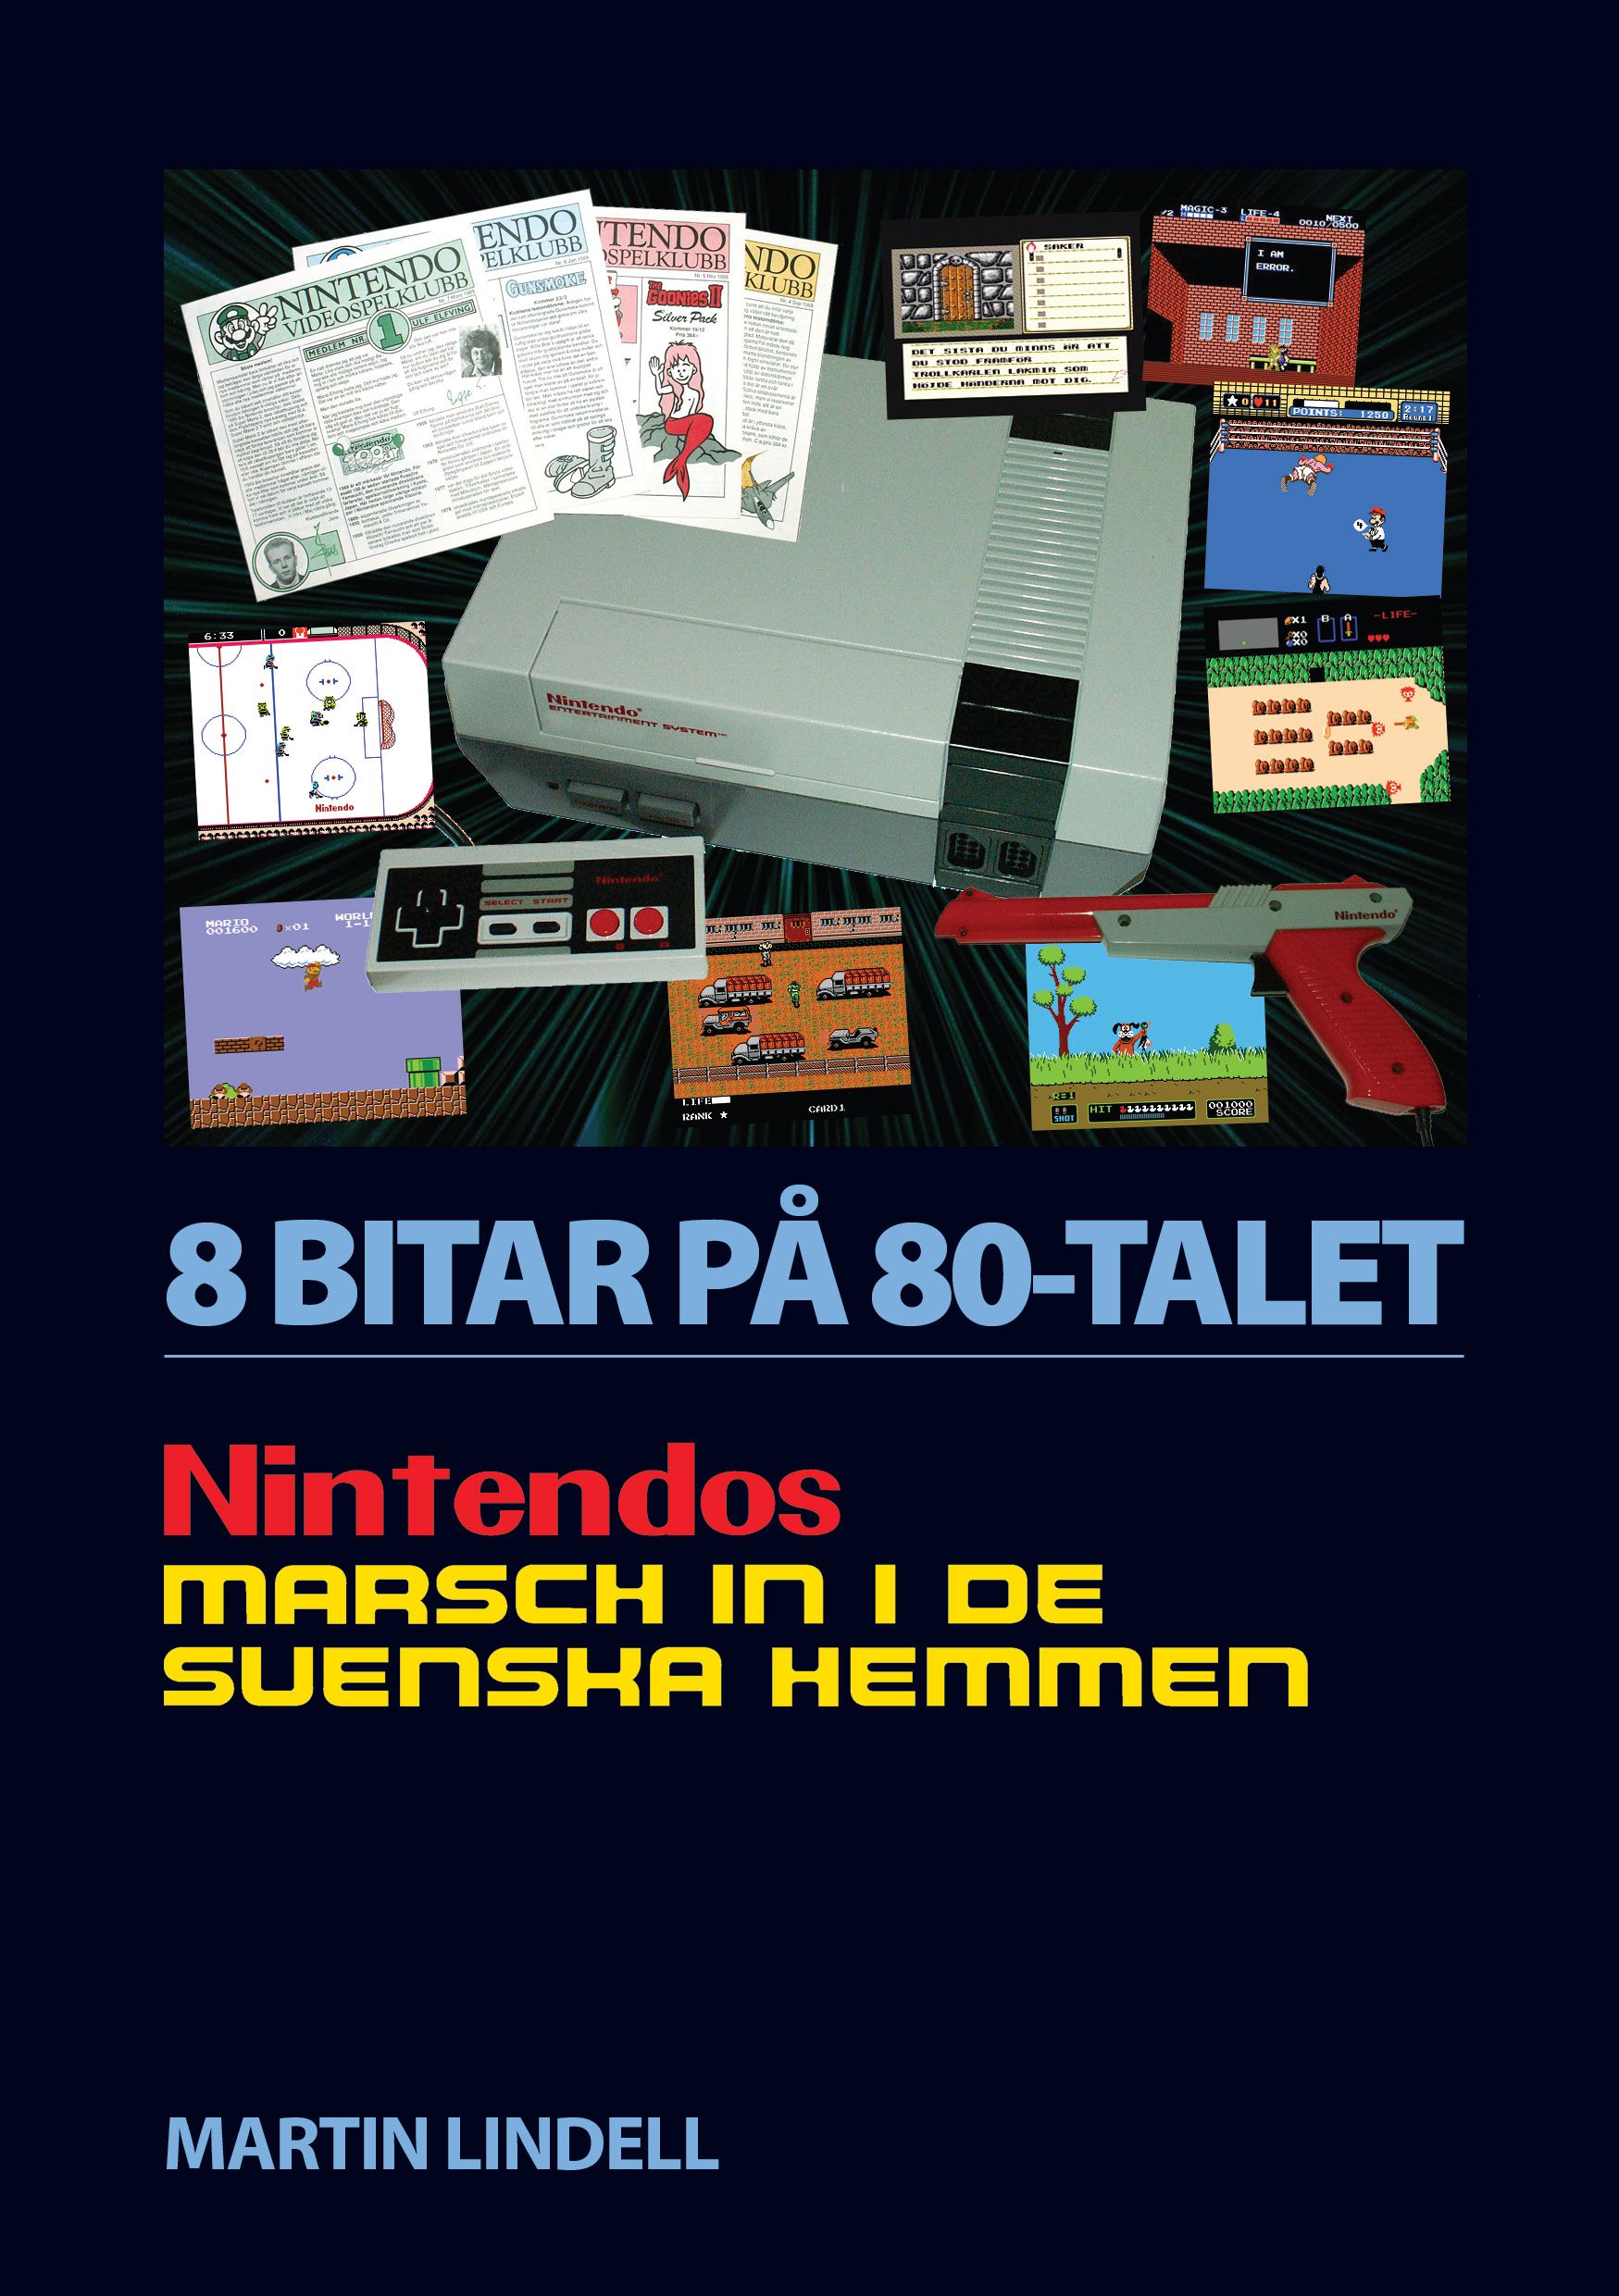 8 BITAR PÅ 80-TALET: NINTENDOS MARSCH IN I DE SVENSKA HEMMEN, e-bog af Martin Lindell